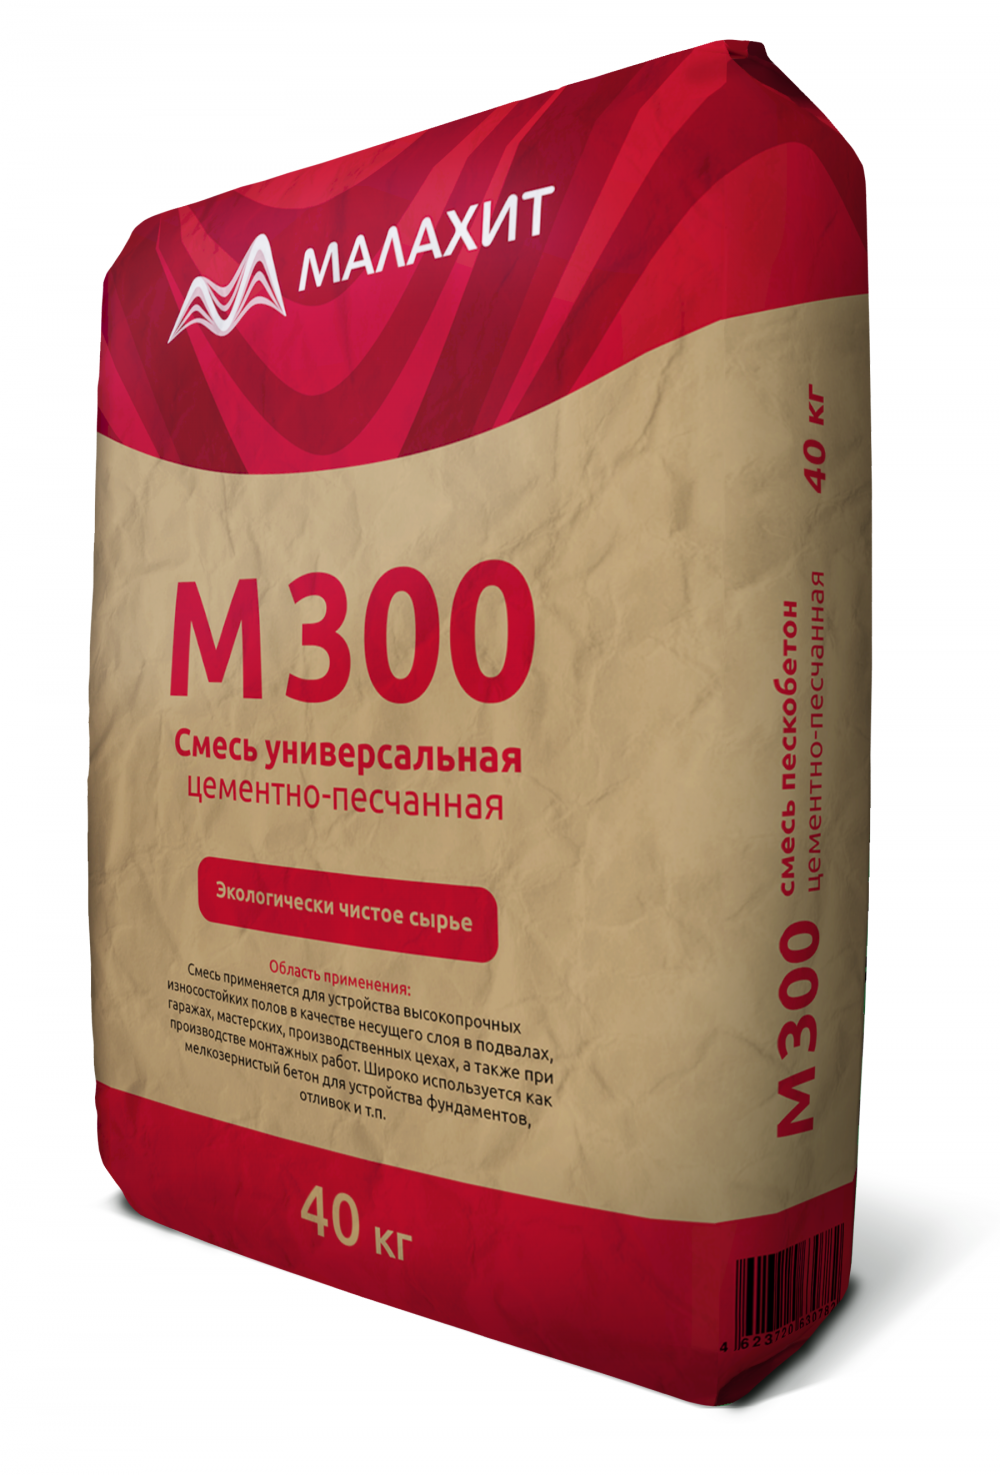 Сухая смесь М300 «Малахит» пескобетон ГОСТ 28013-98, 40кг